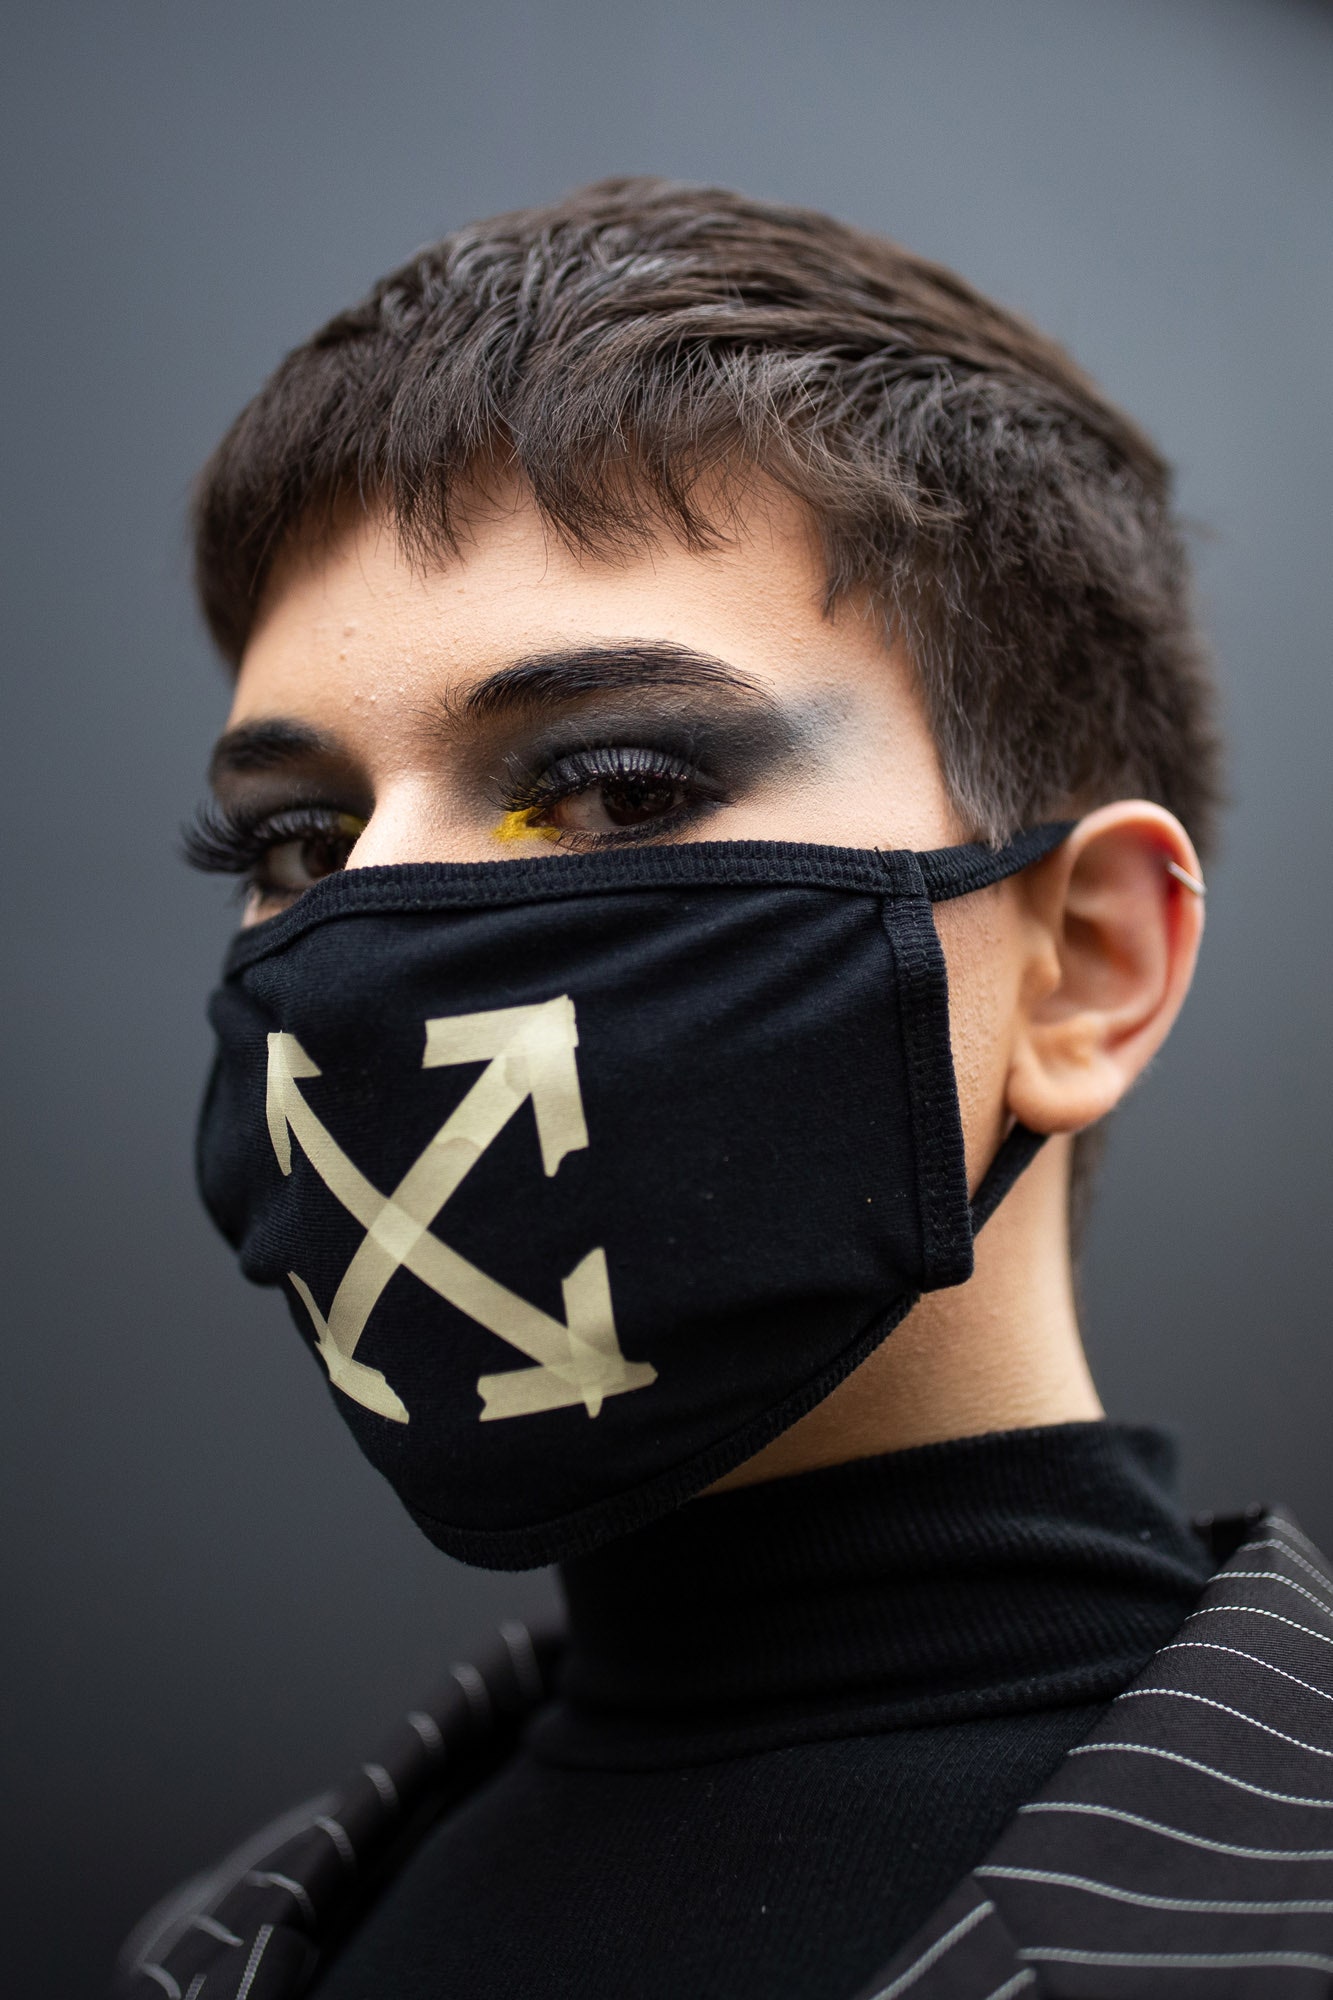 Как защитная маска от коронавируса стала трендом 15 эффектных образов героев стритстайла